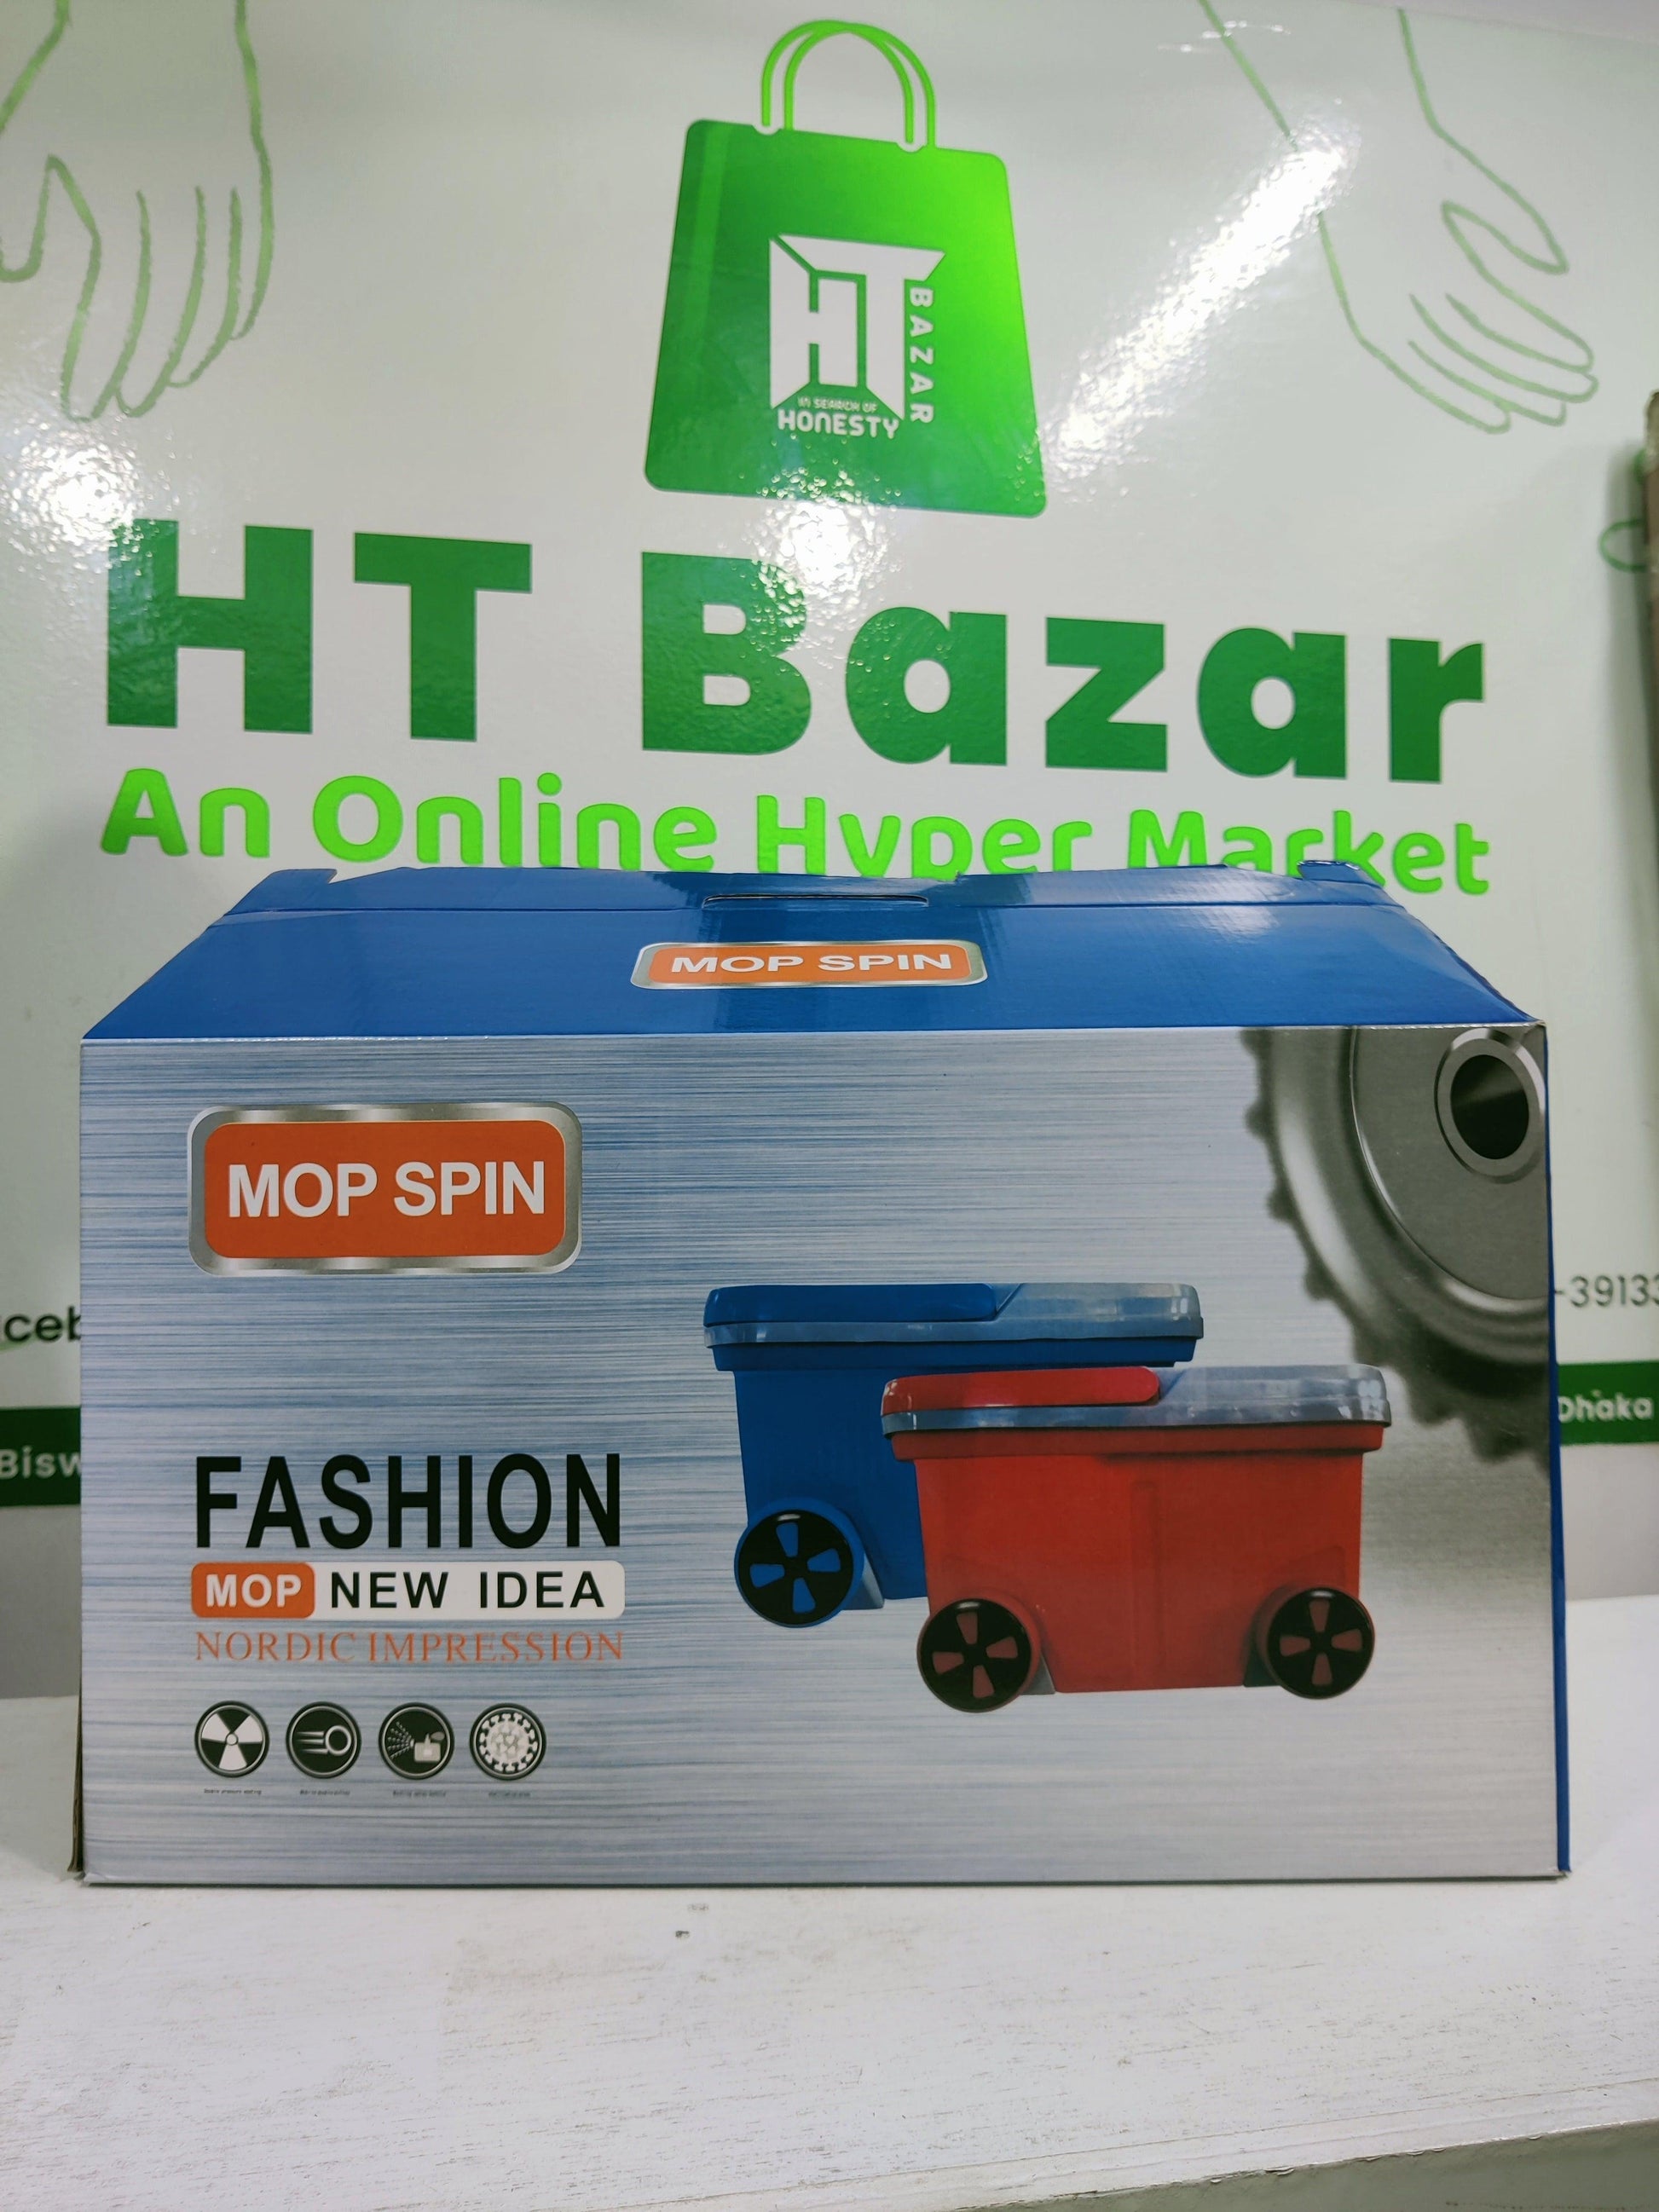 Premium mop spin - HT Bazar